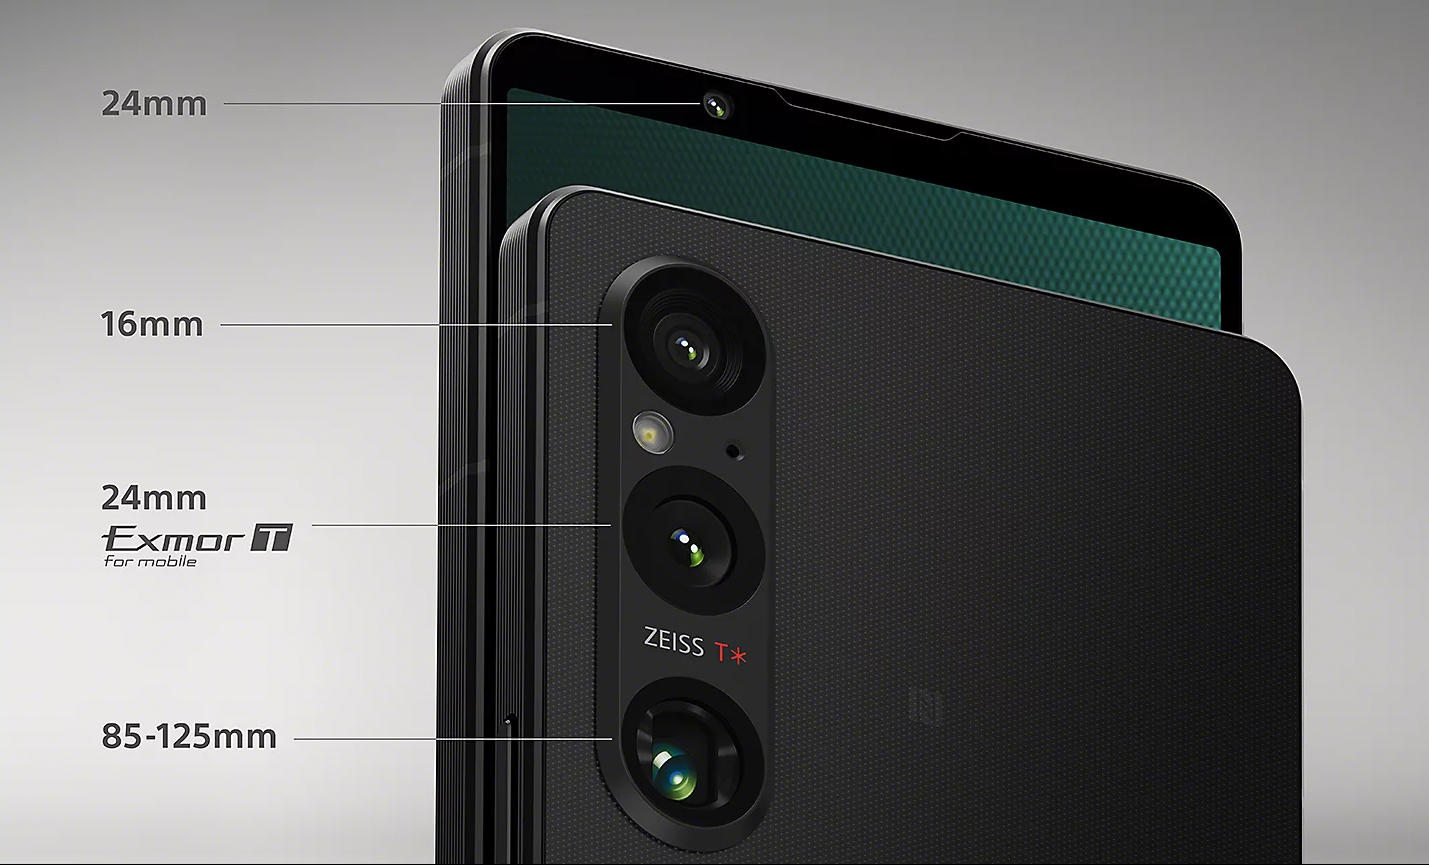 Camera specs on the Sony Xperia 1 V. Photo: Sony